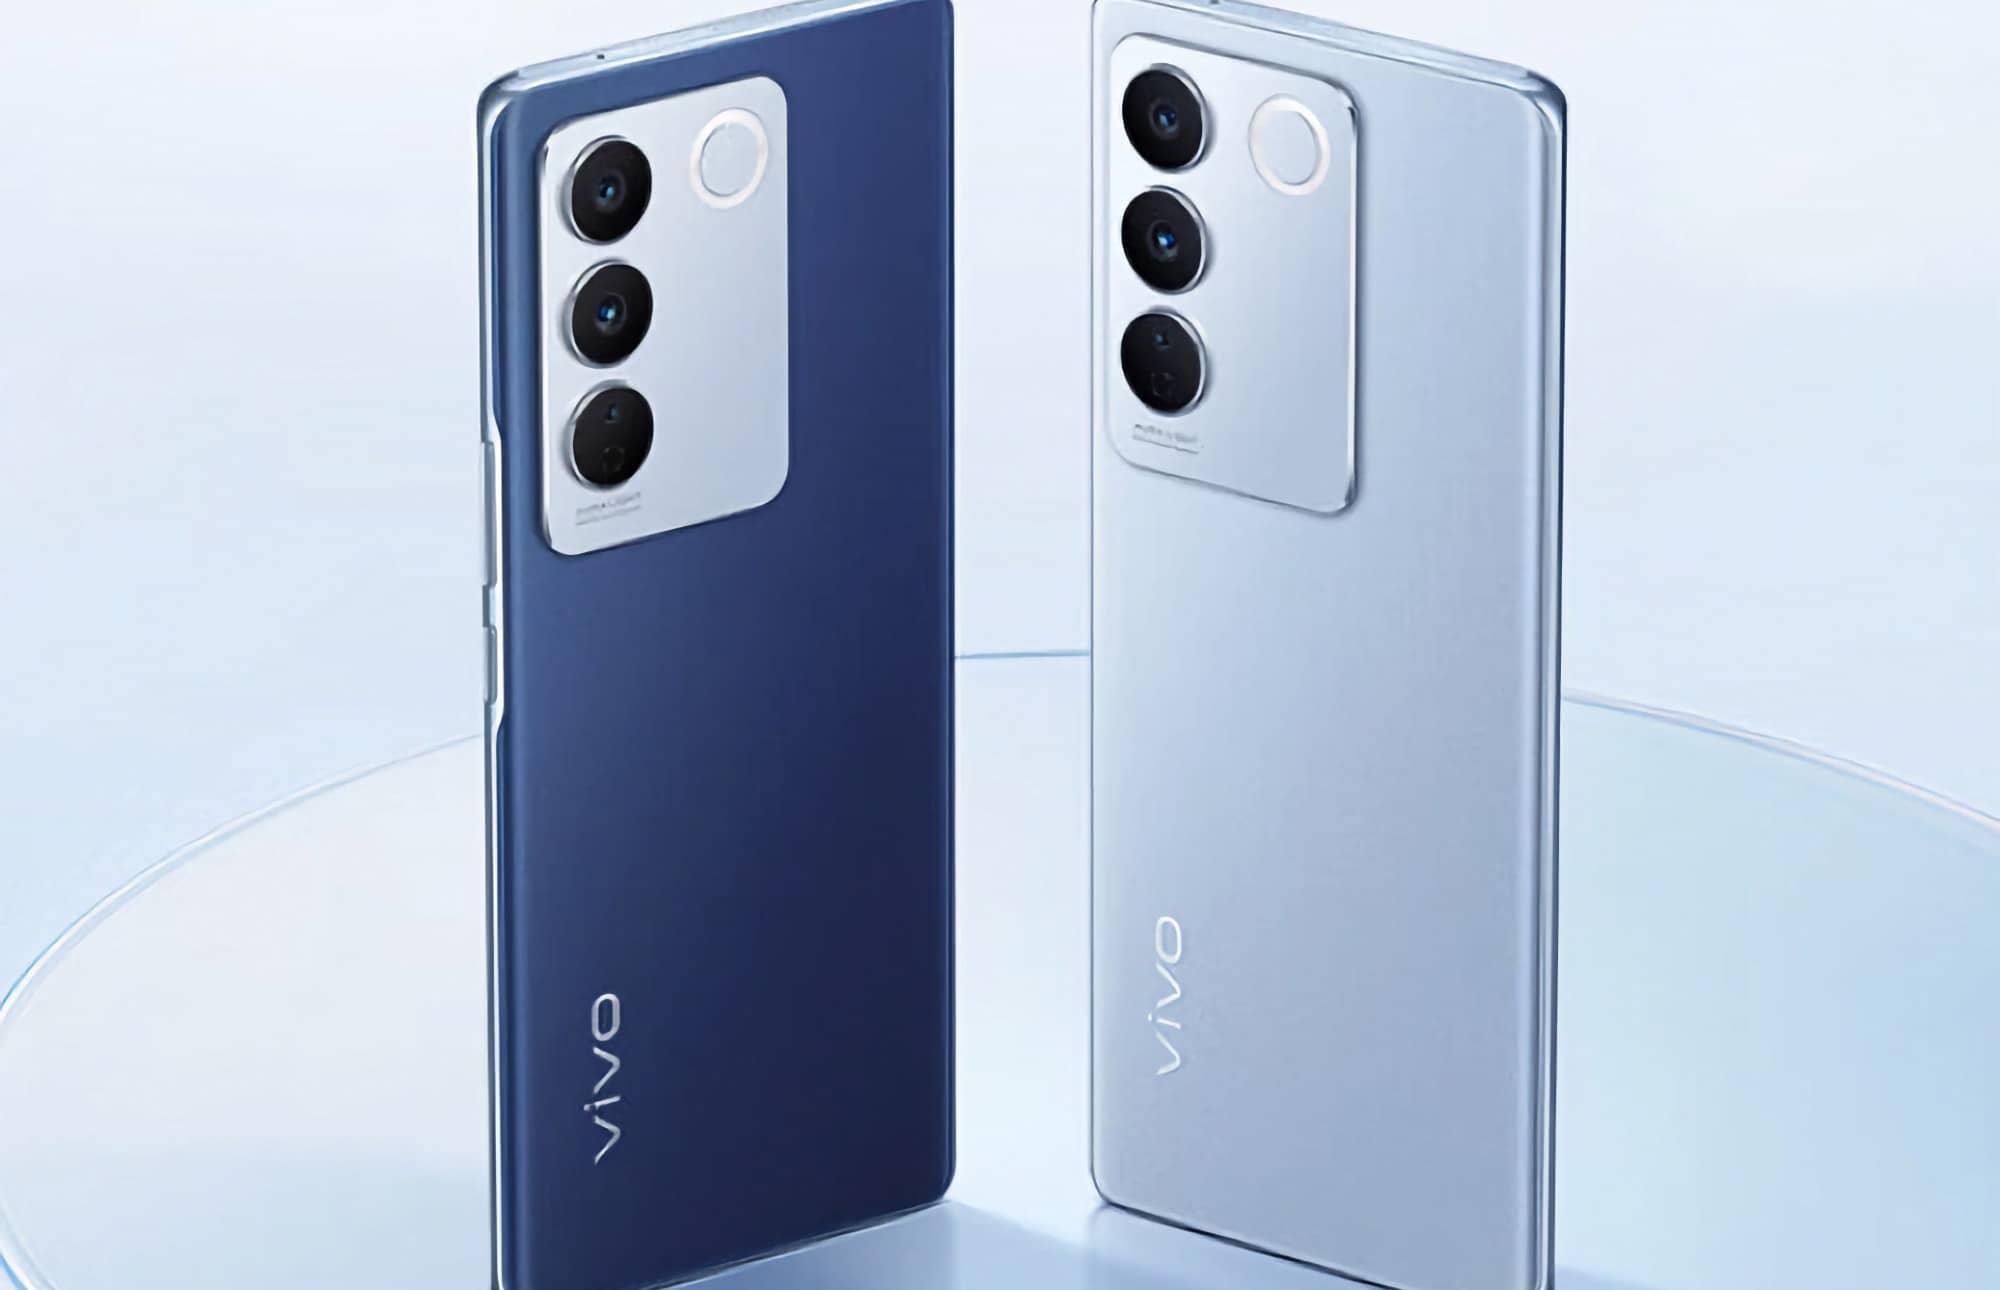 Смартфон Vivo S16 выпустили в новом фотохромном цвете Spring Blue